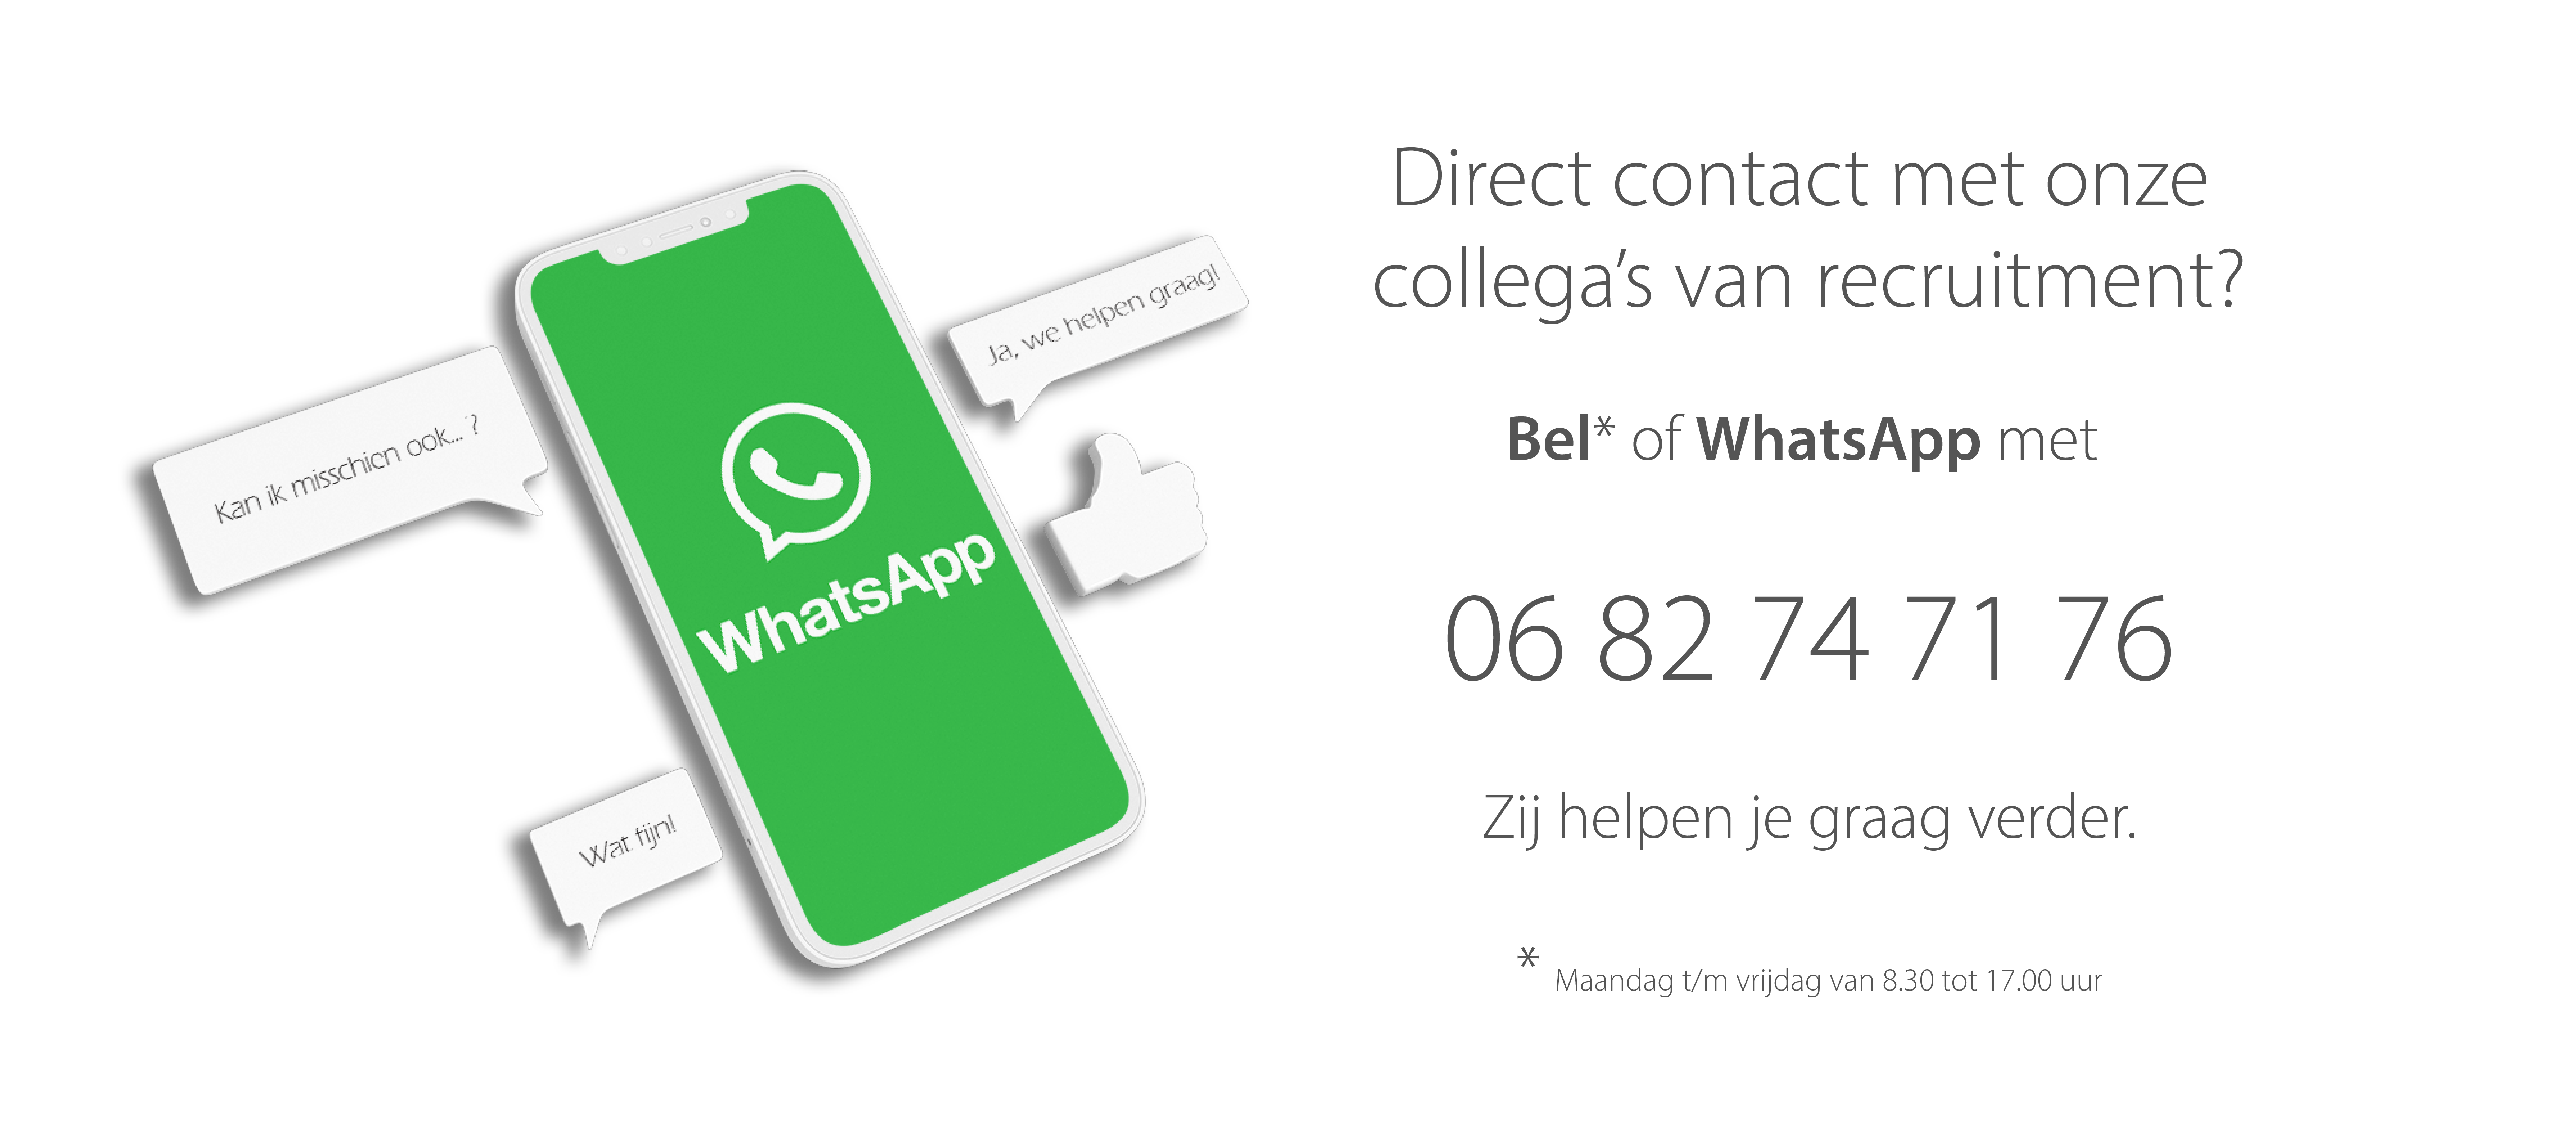 Bel of WhatsApp met 06 82 74 71 76